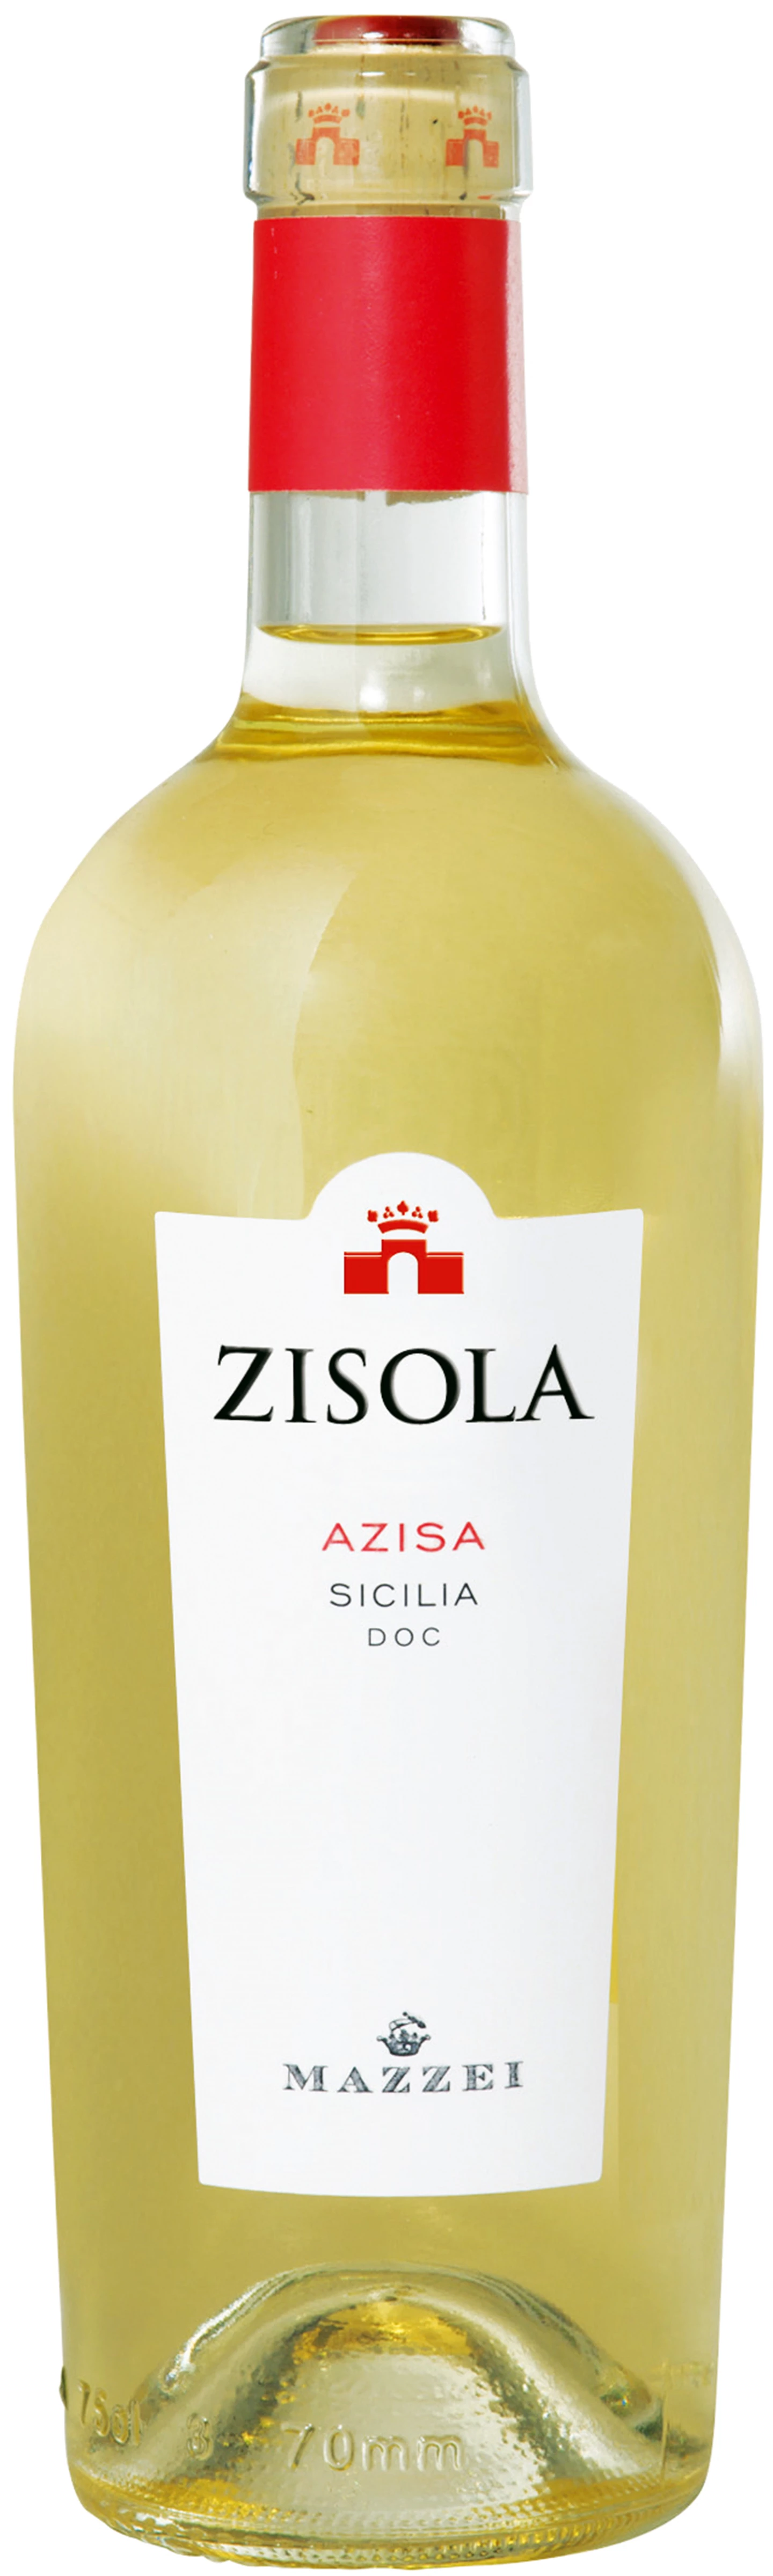 Zisola_Azisa-Bianco-Sicilia-NV